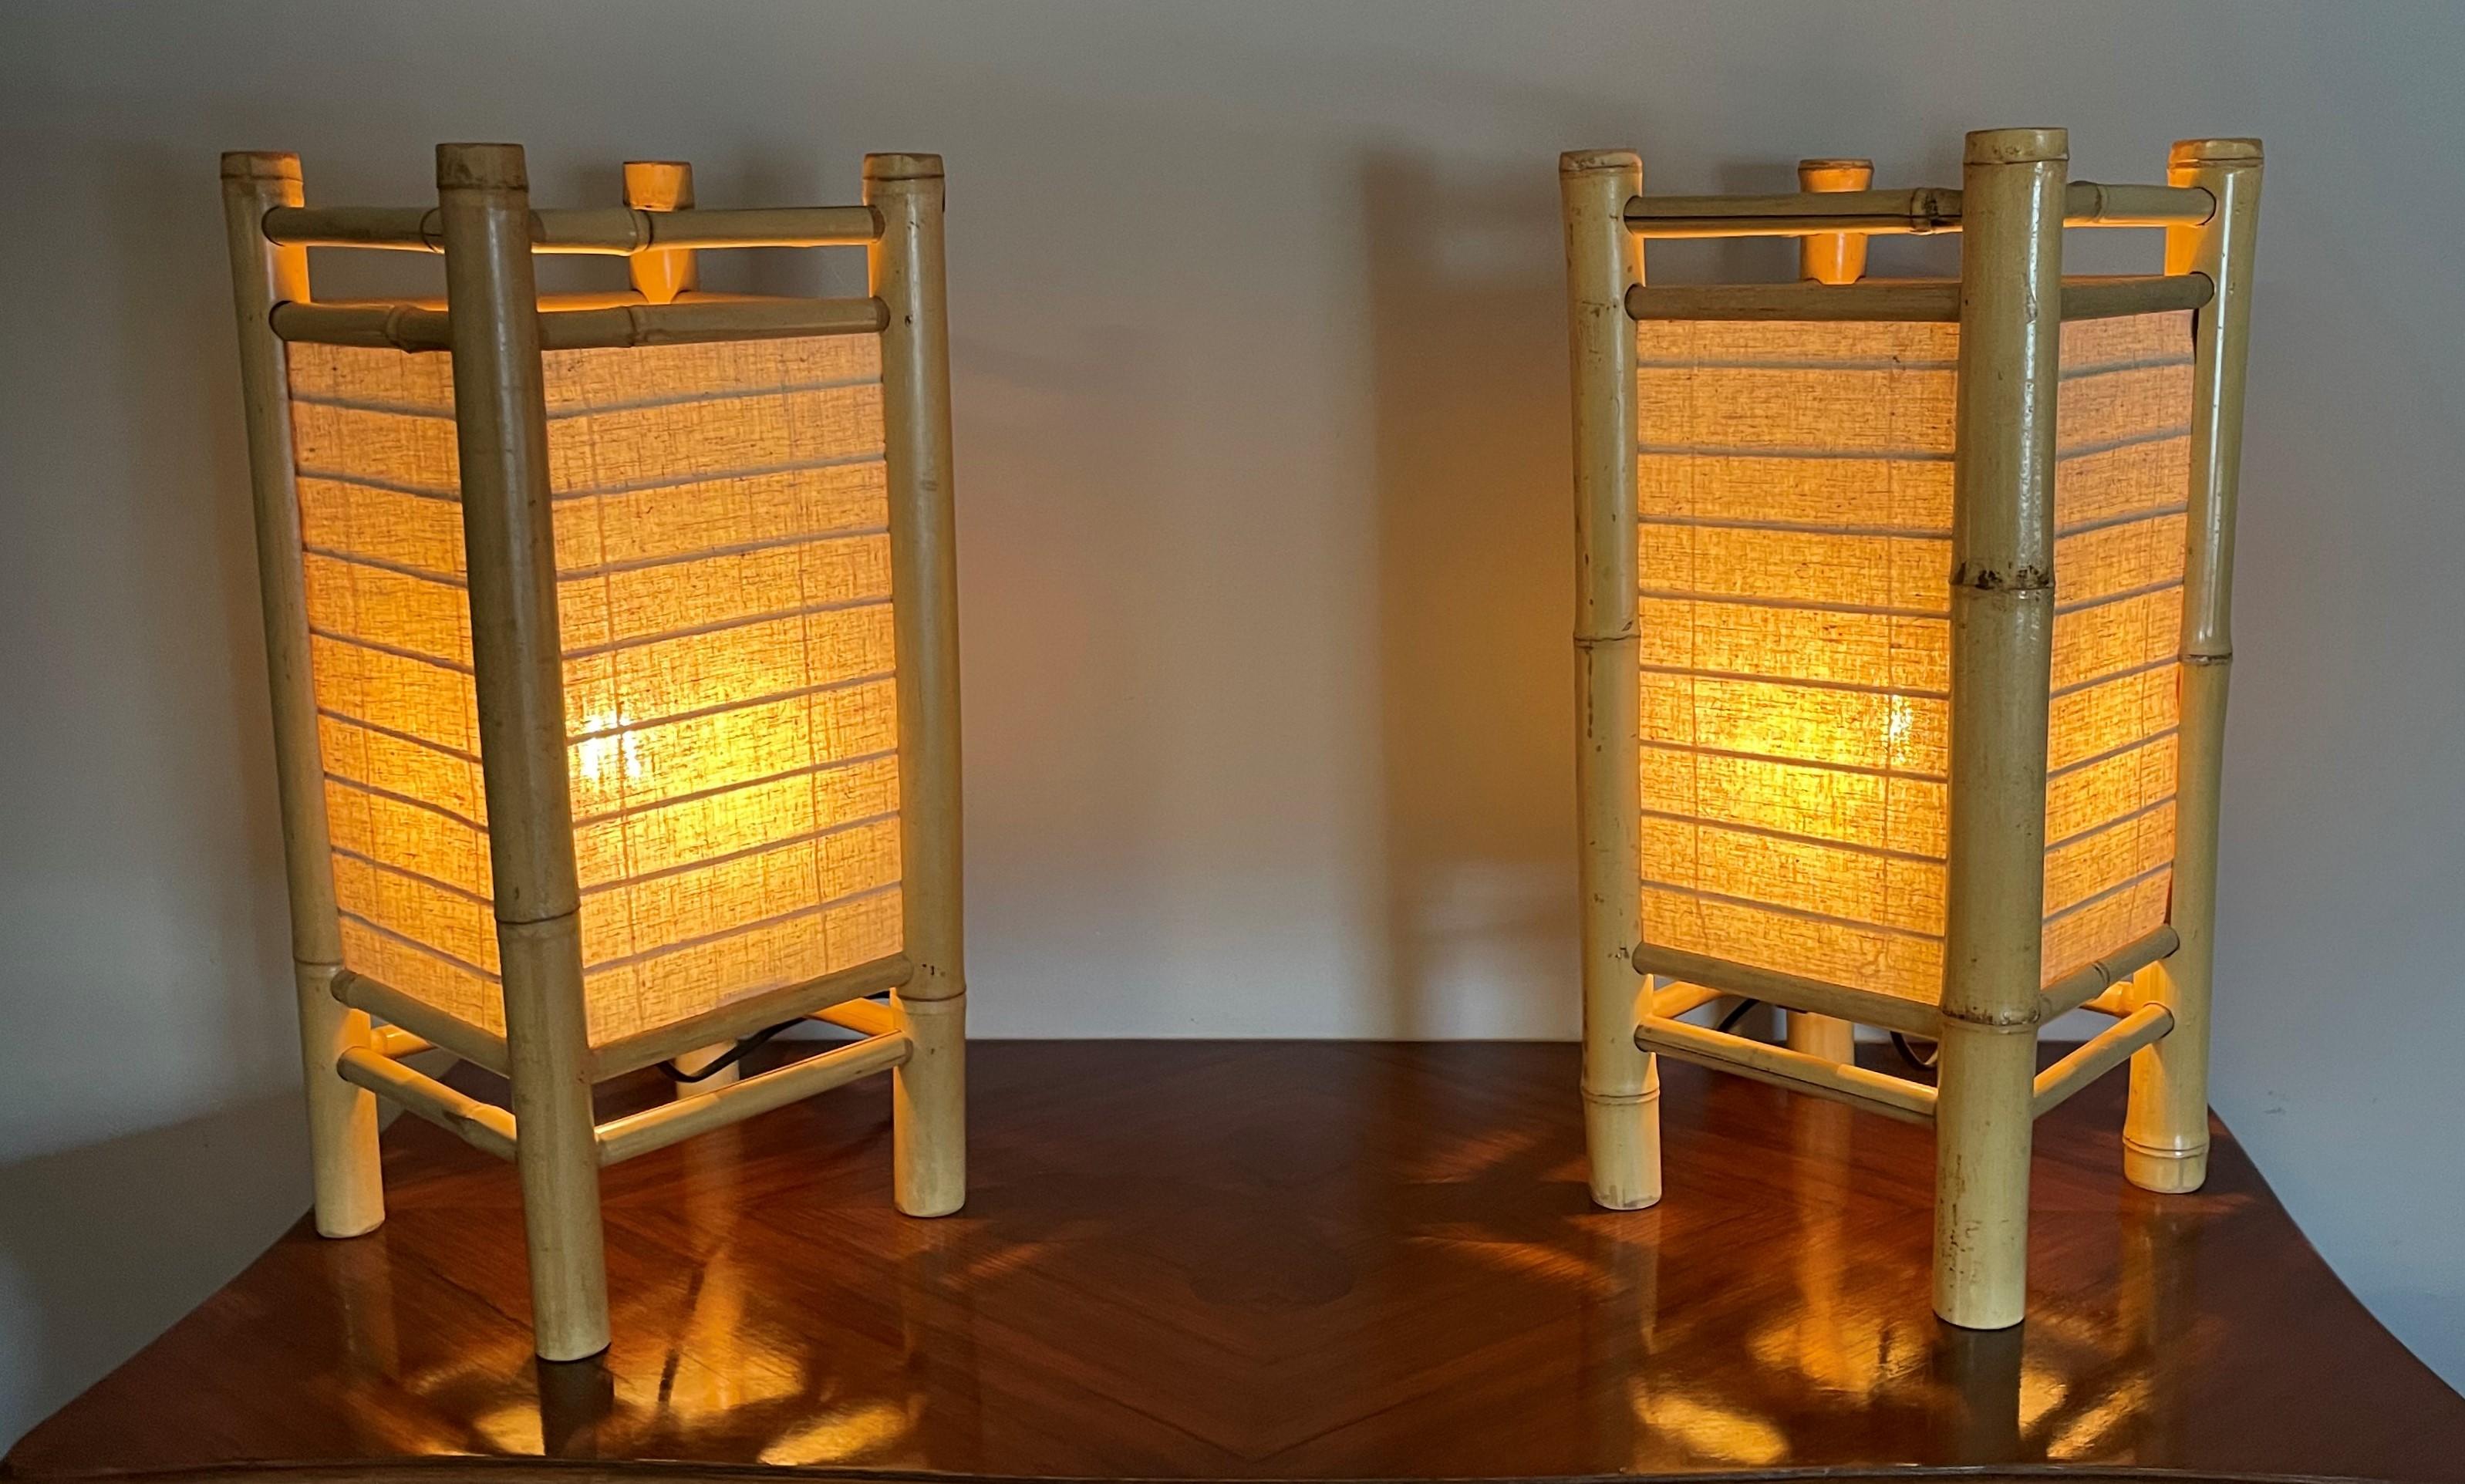 Merveilleuses lampes de table au design organique et de taille pratique.

Ces lampes de table fabriquées à la main à partir de matériaux organiques sont idéales pour un intérieur mid-century ou contemporain. Trouver la bonne solution d'éclairage